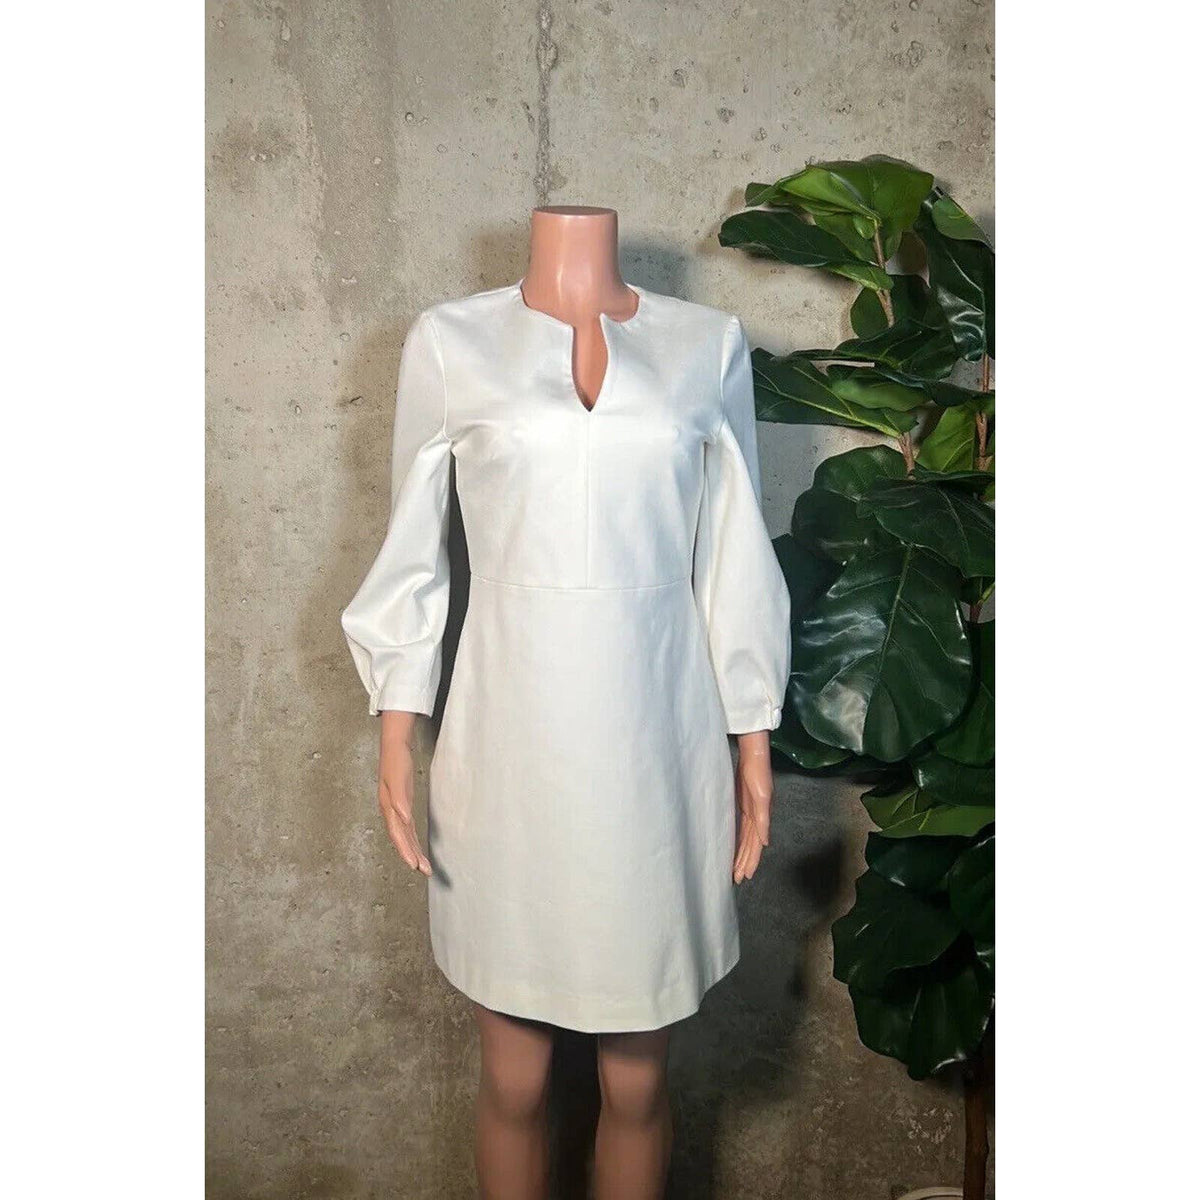 Tibi White Stretch Dress Sz.6